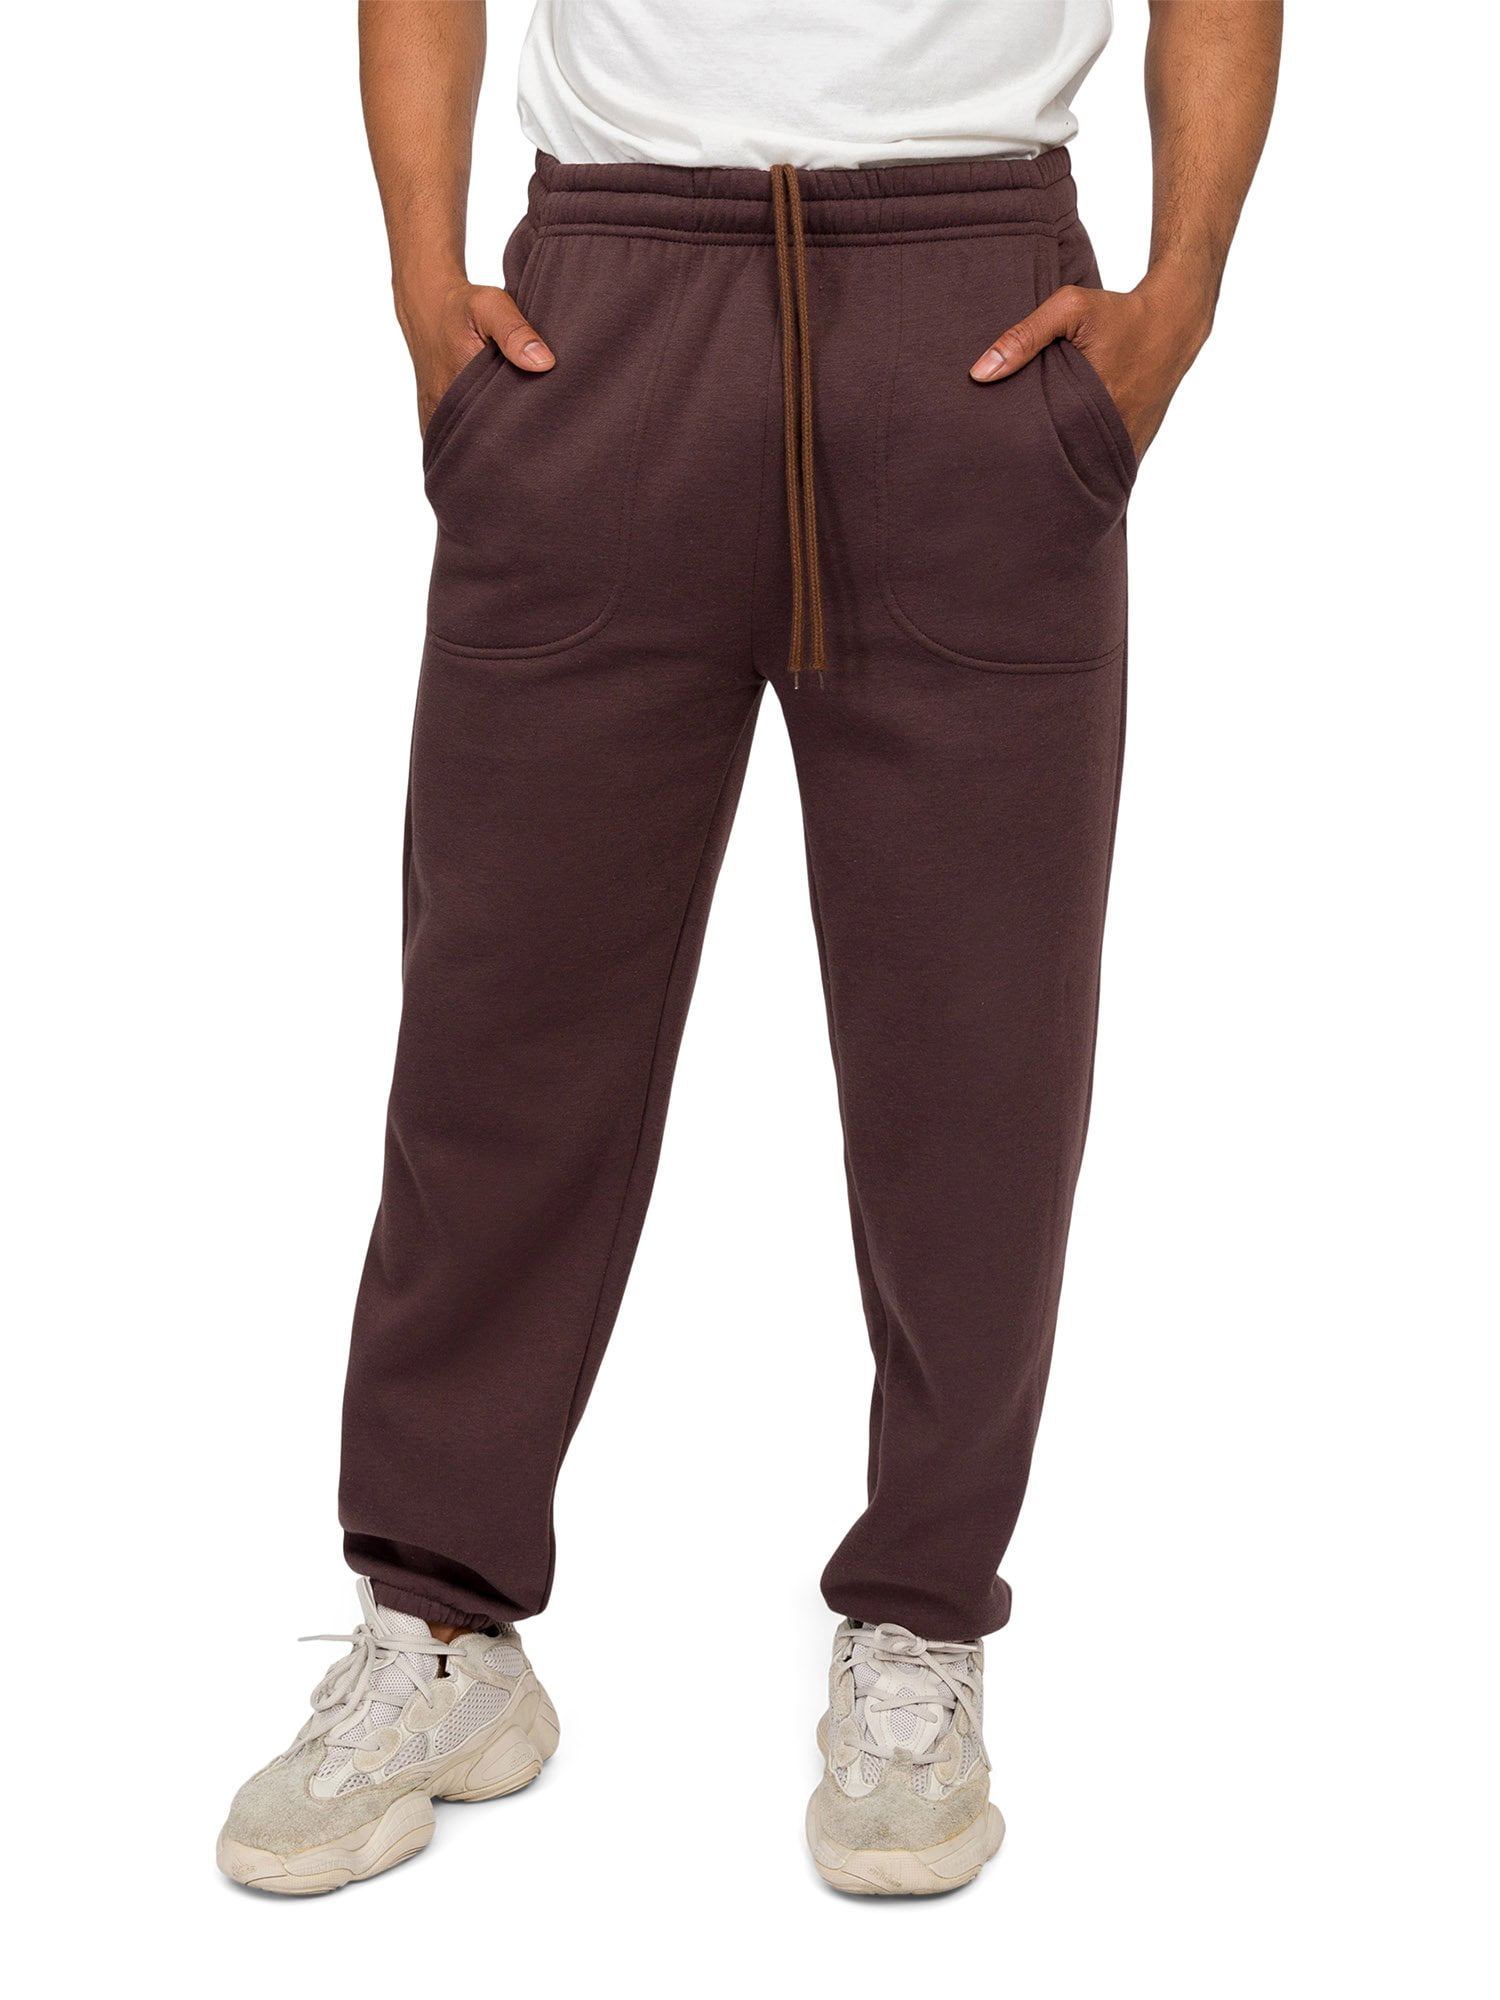 Men's Lightweight Fleece Elastic Bottom Sweatpants - Walmart.com